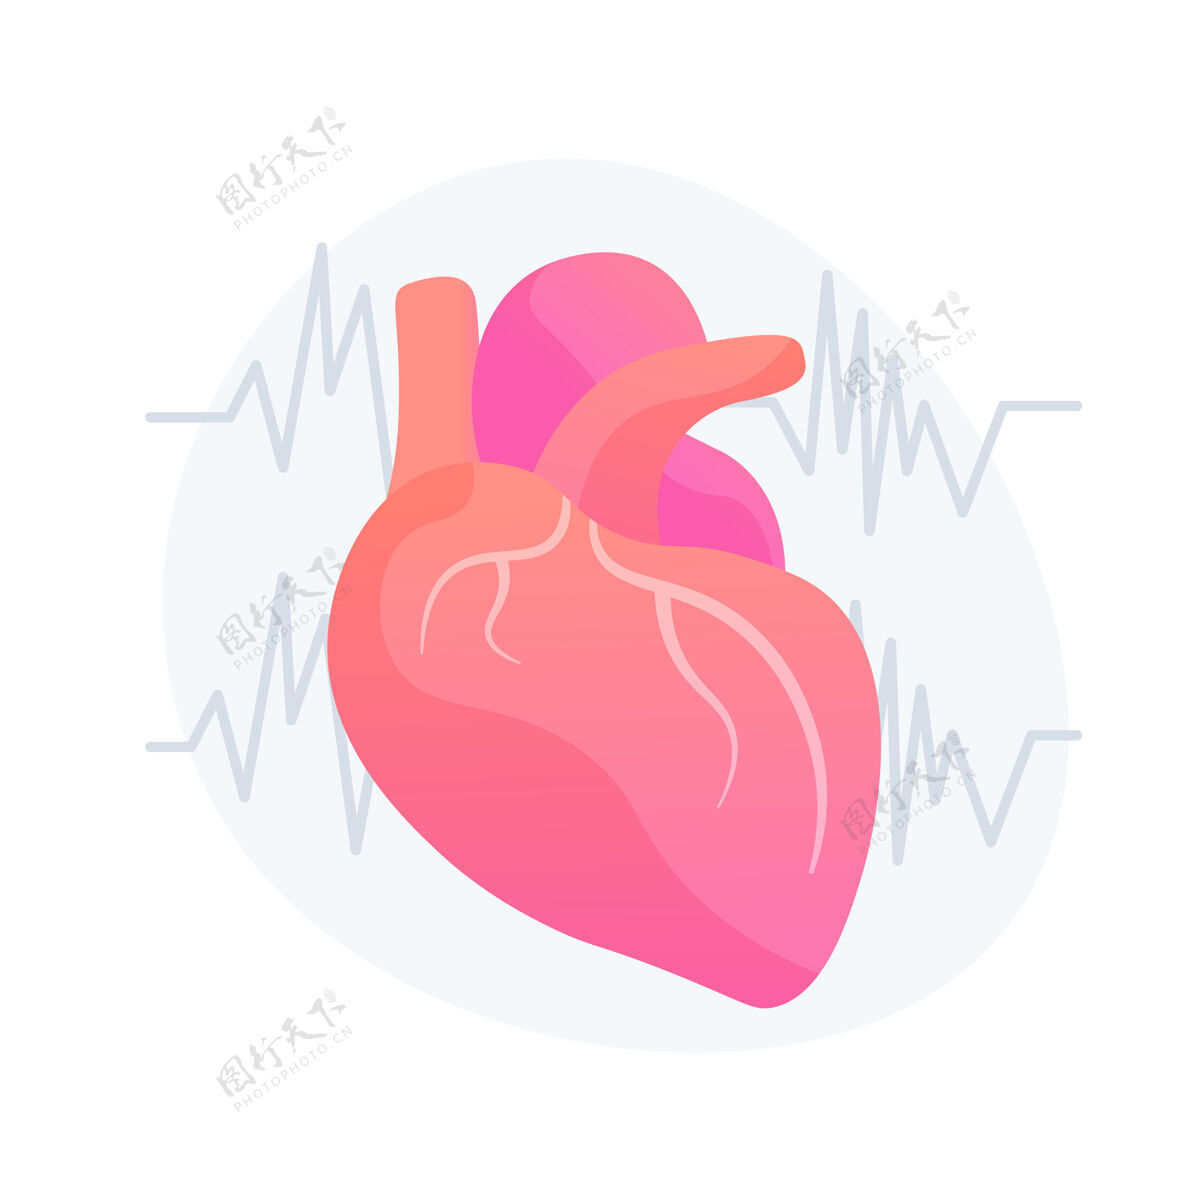 心律心内科门诊 医院科室健康心脏 心血管预防 医疗保健行业理念设计元素心电图 心电图向量隔离概念隐喻说明心脏医学艺术作品